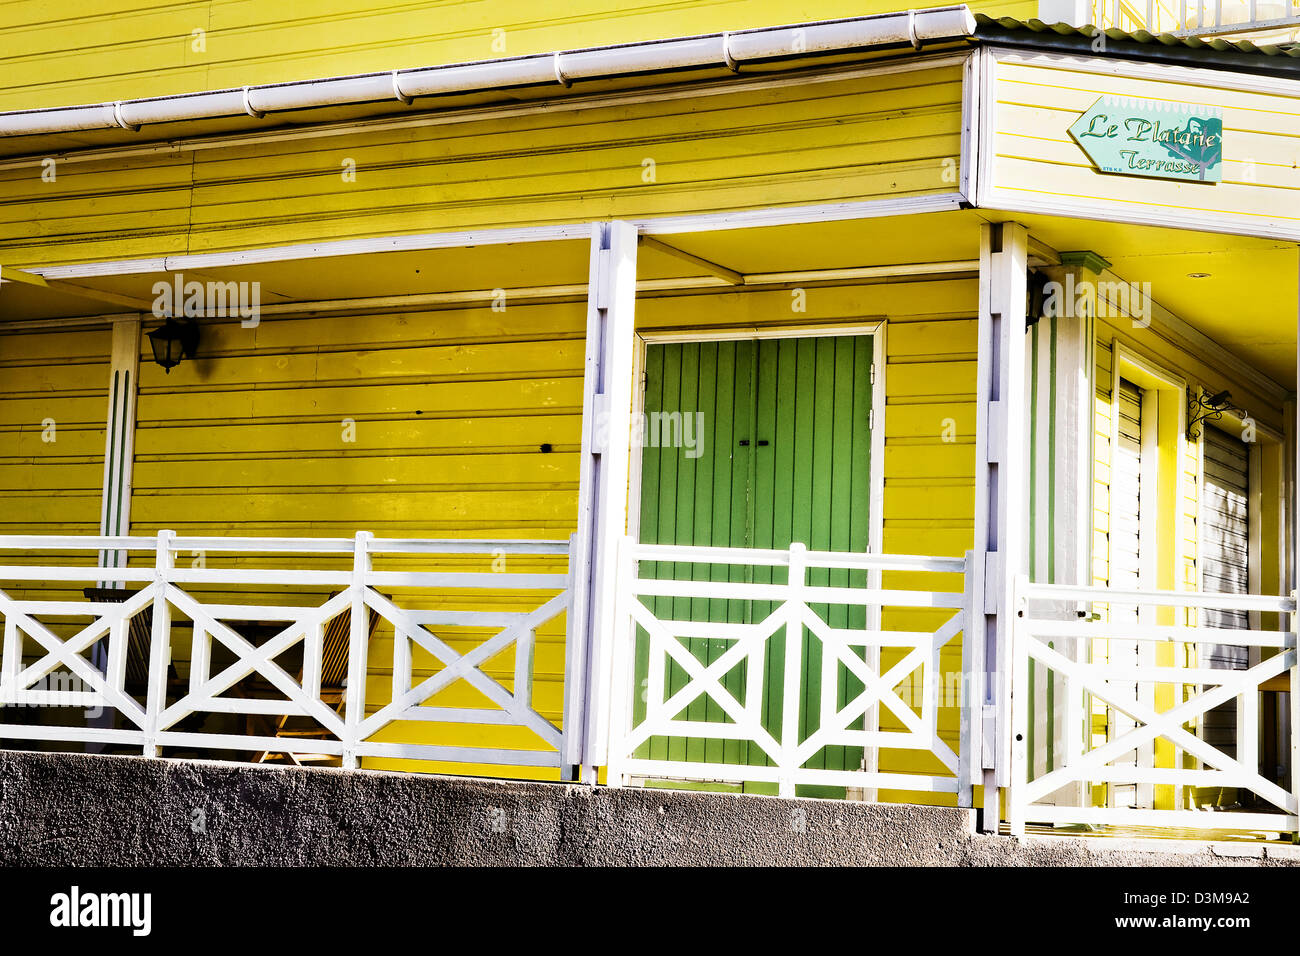 La face d'un restaurant en montagne commune commune de Cilaos, Ile de la réunion- île française dans l'Océan Indien Banque D'Images